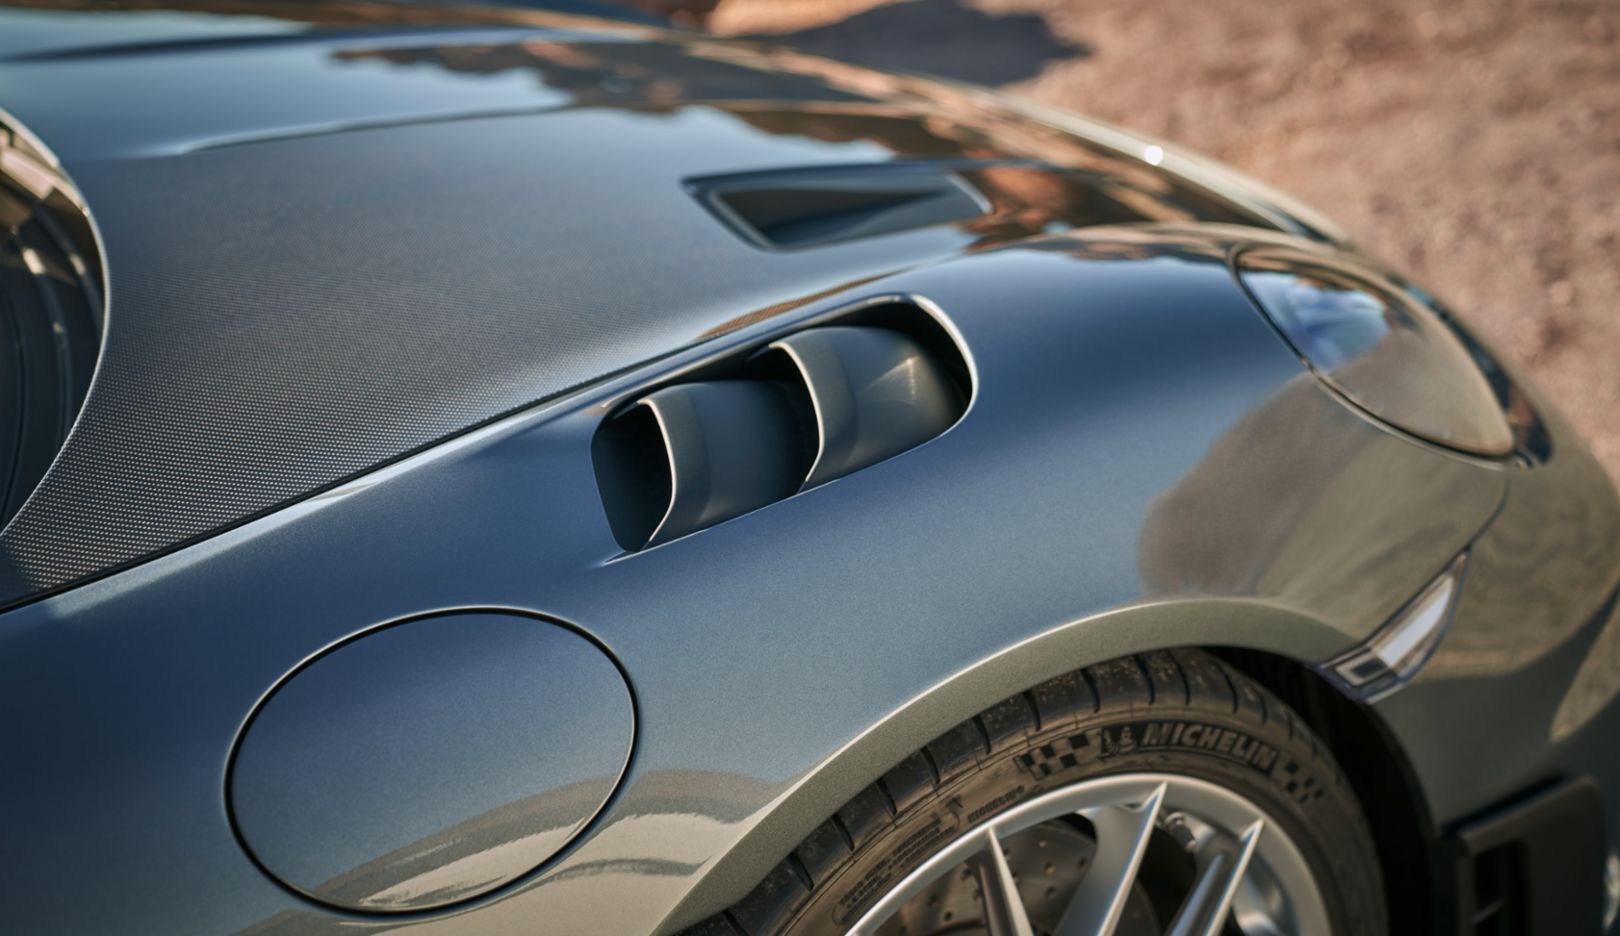 令人震撼的声浪：4.0 升六缸自然进气水平对置发动机源于 911 GT3。